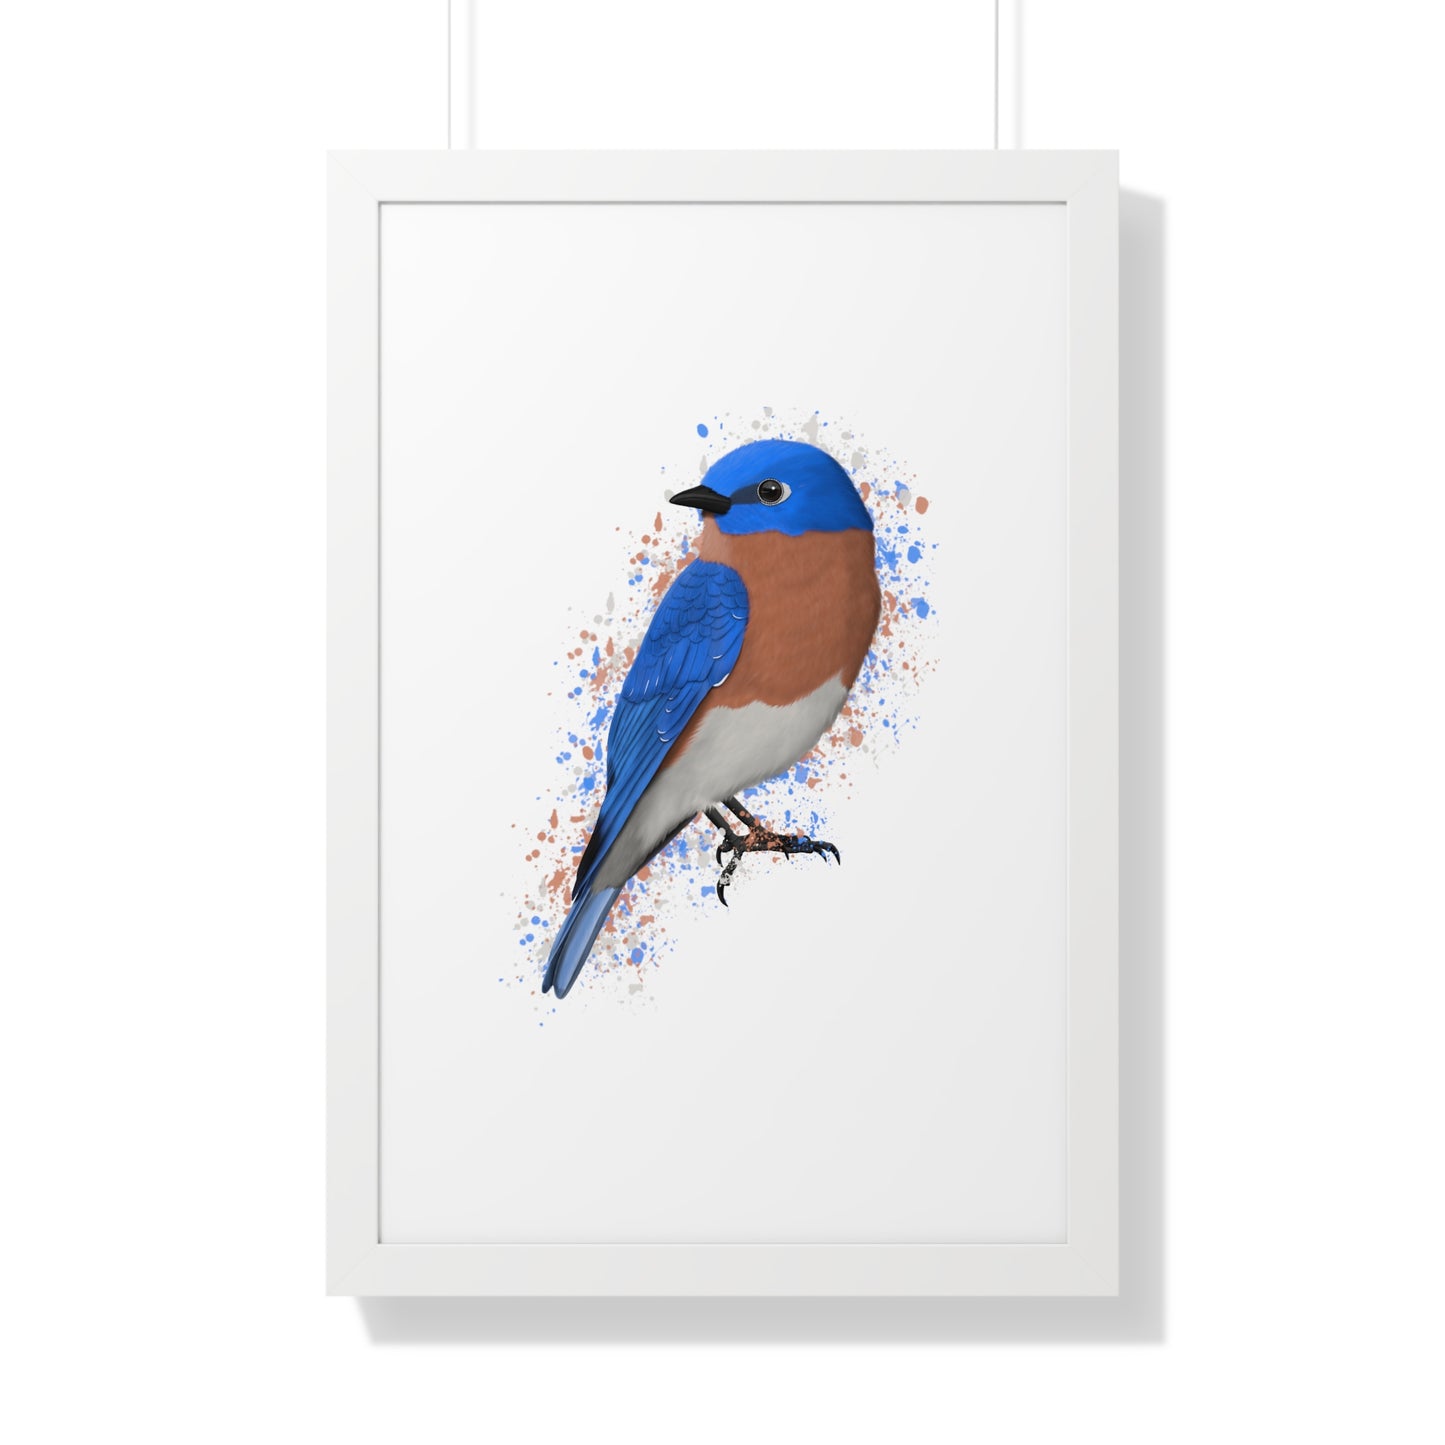 Bluebird Bird Framed Poster